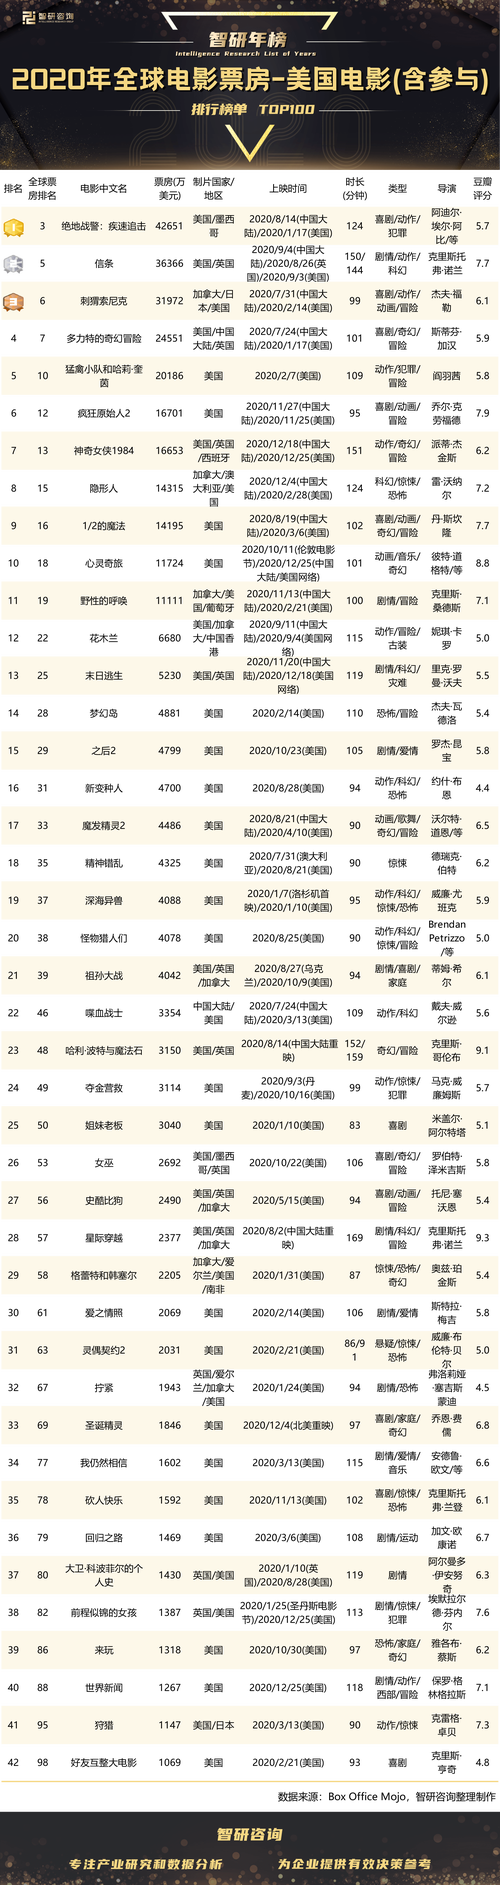 16年票房排行榜长津湖票房突破54亿元登上中国影史票房榜第二名